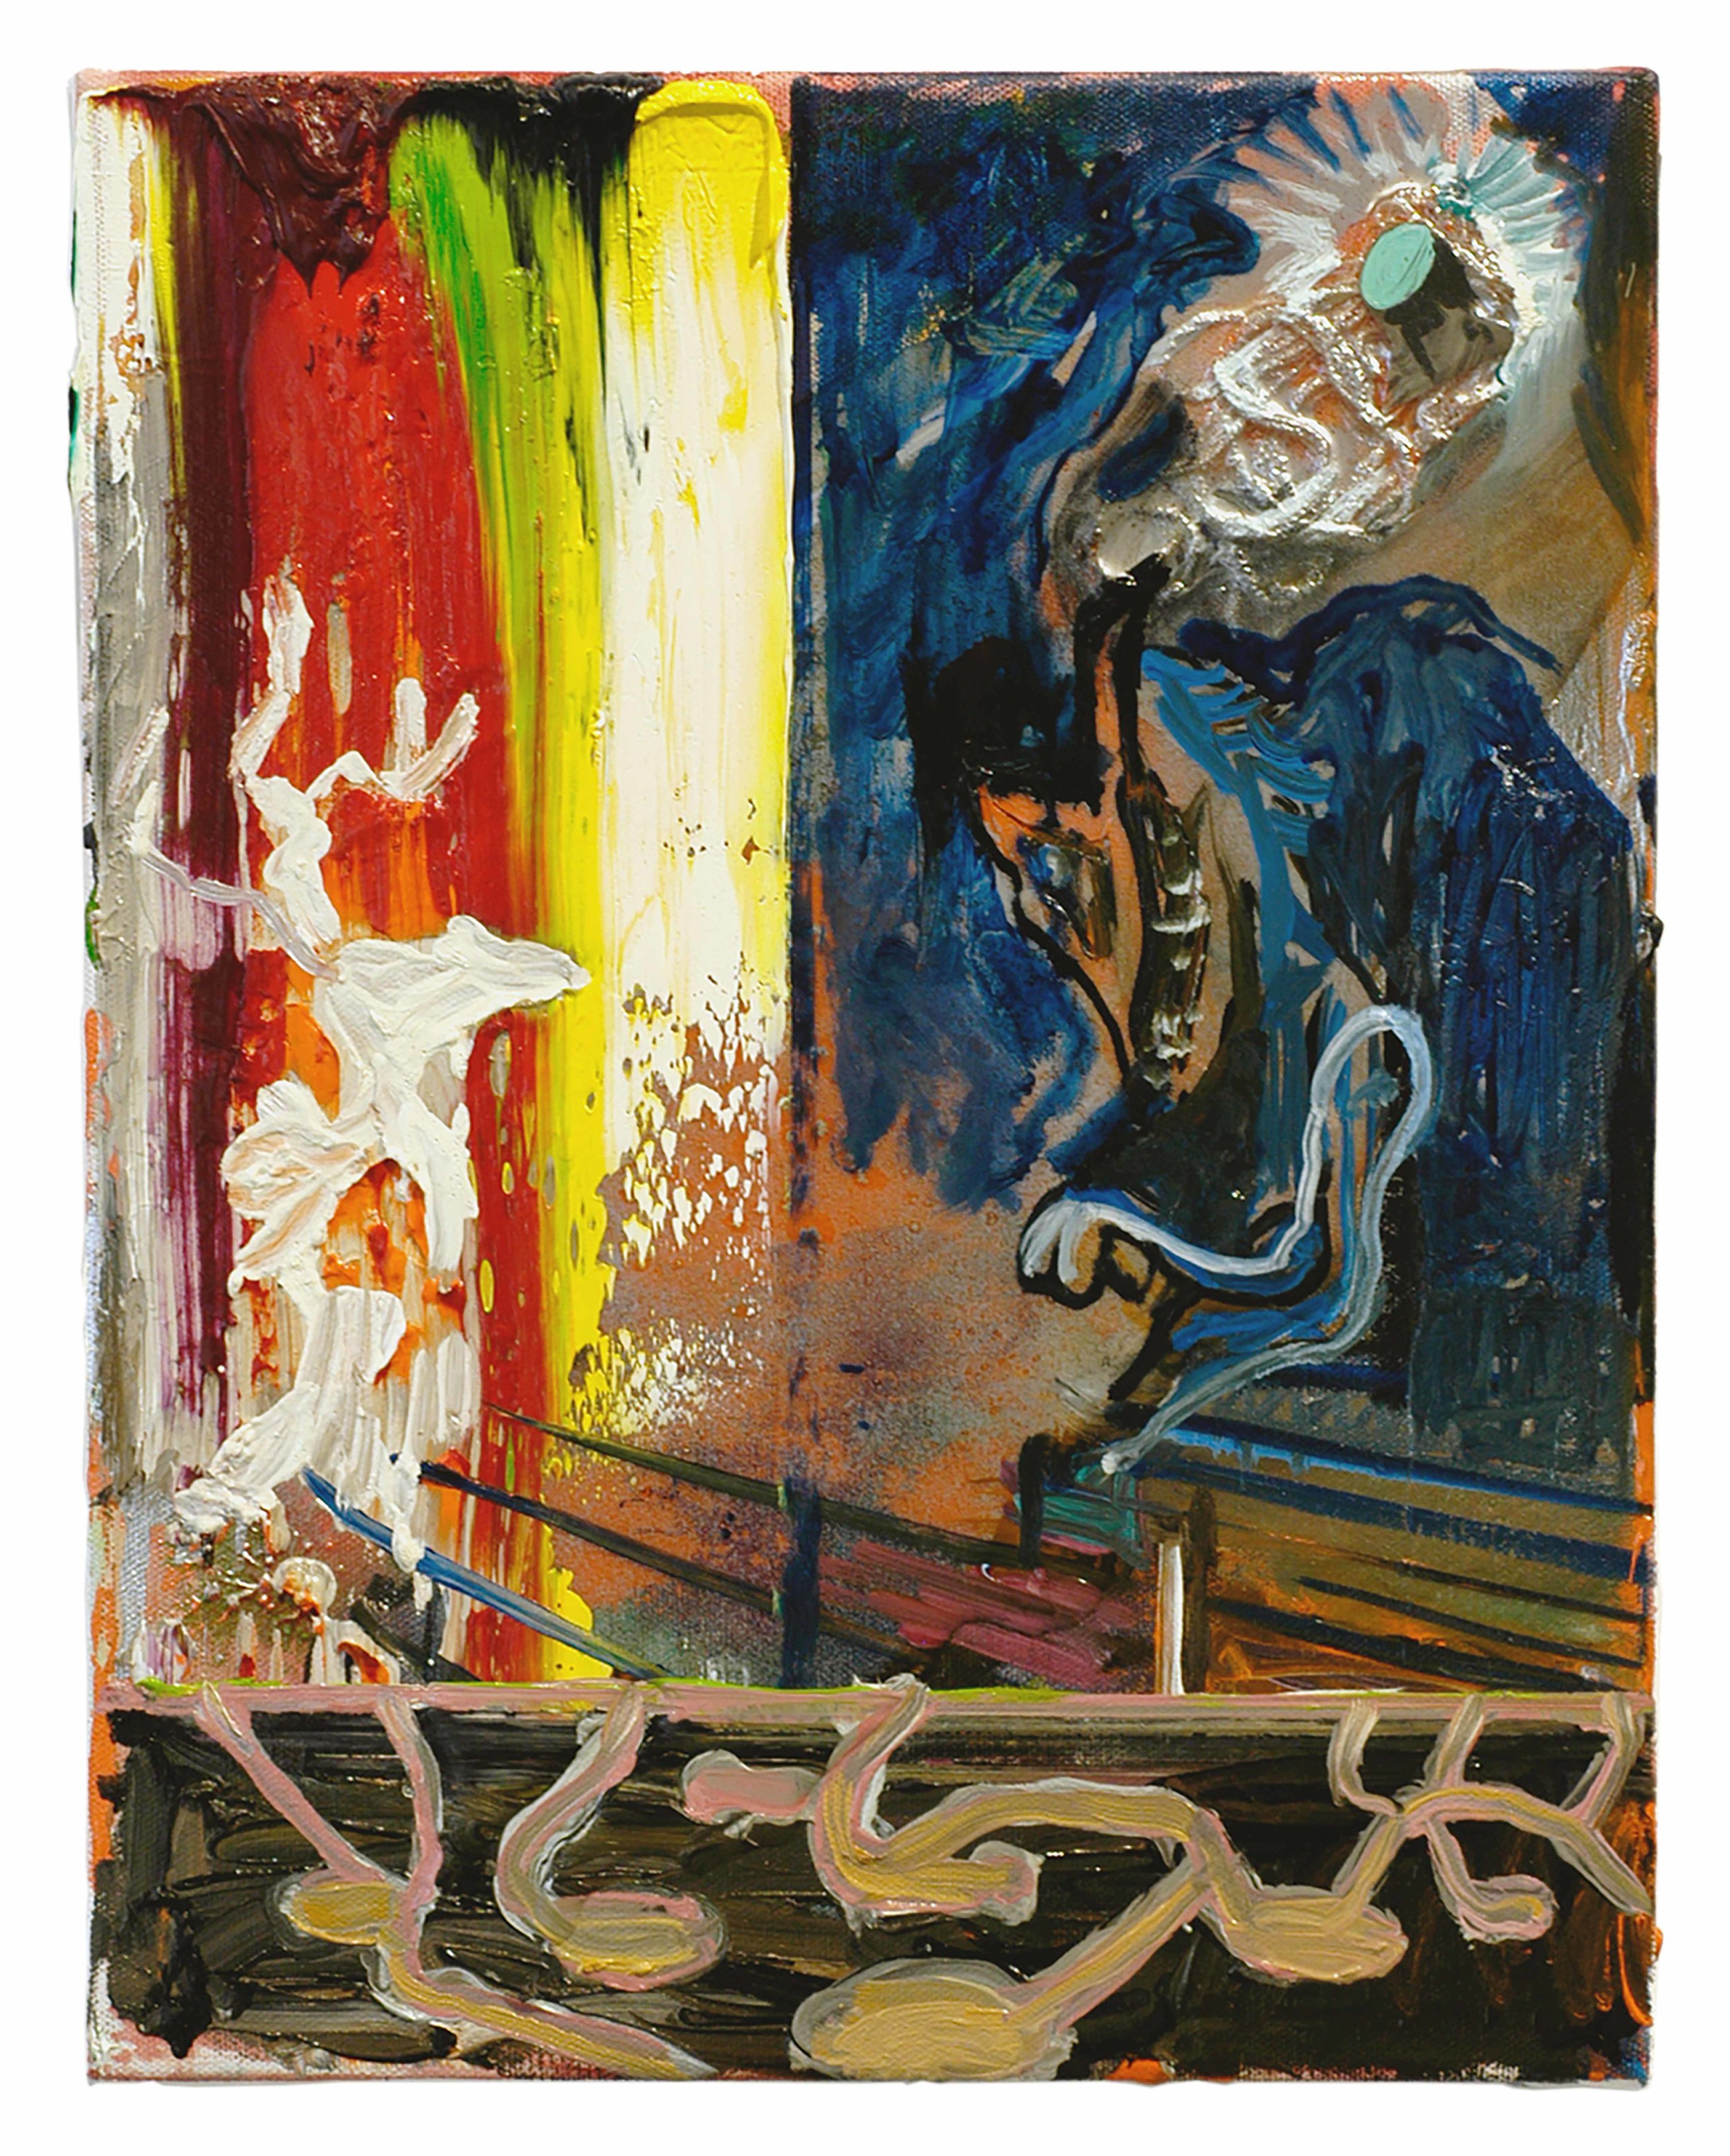  Drew Beattie  Rainbow Deer &nbsp; 2005 oil, spray paint, resin and canvas thread on canvas&nbsp; 14 x 11 inches 